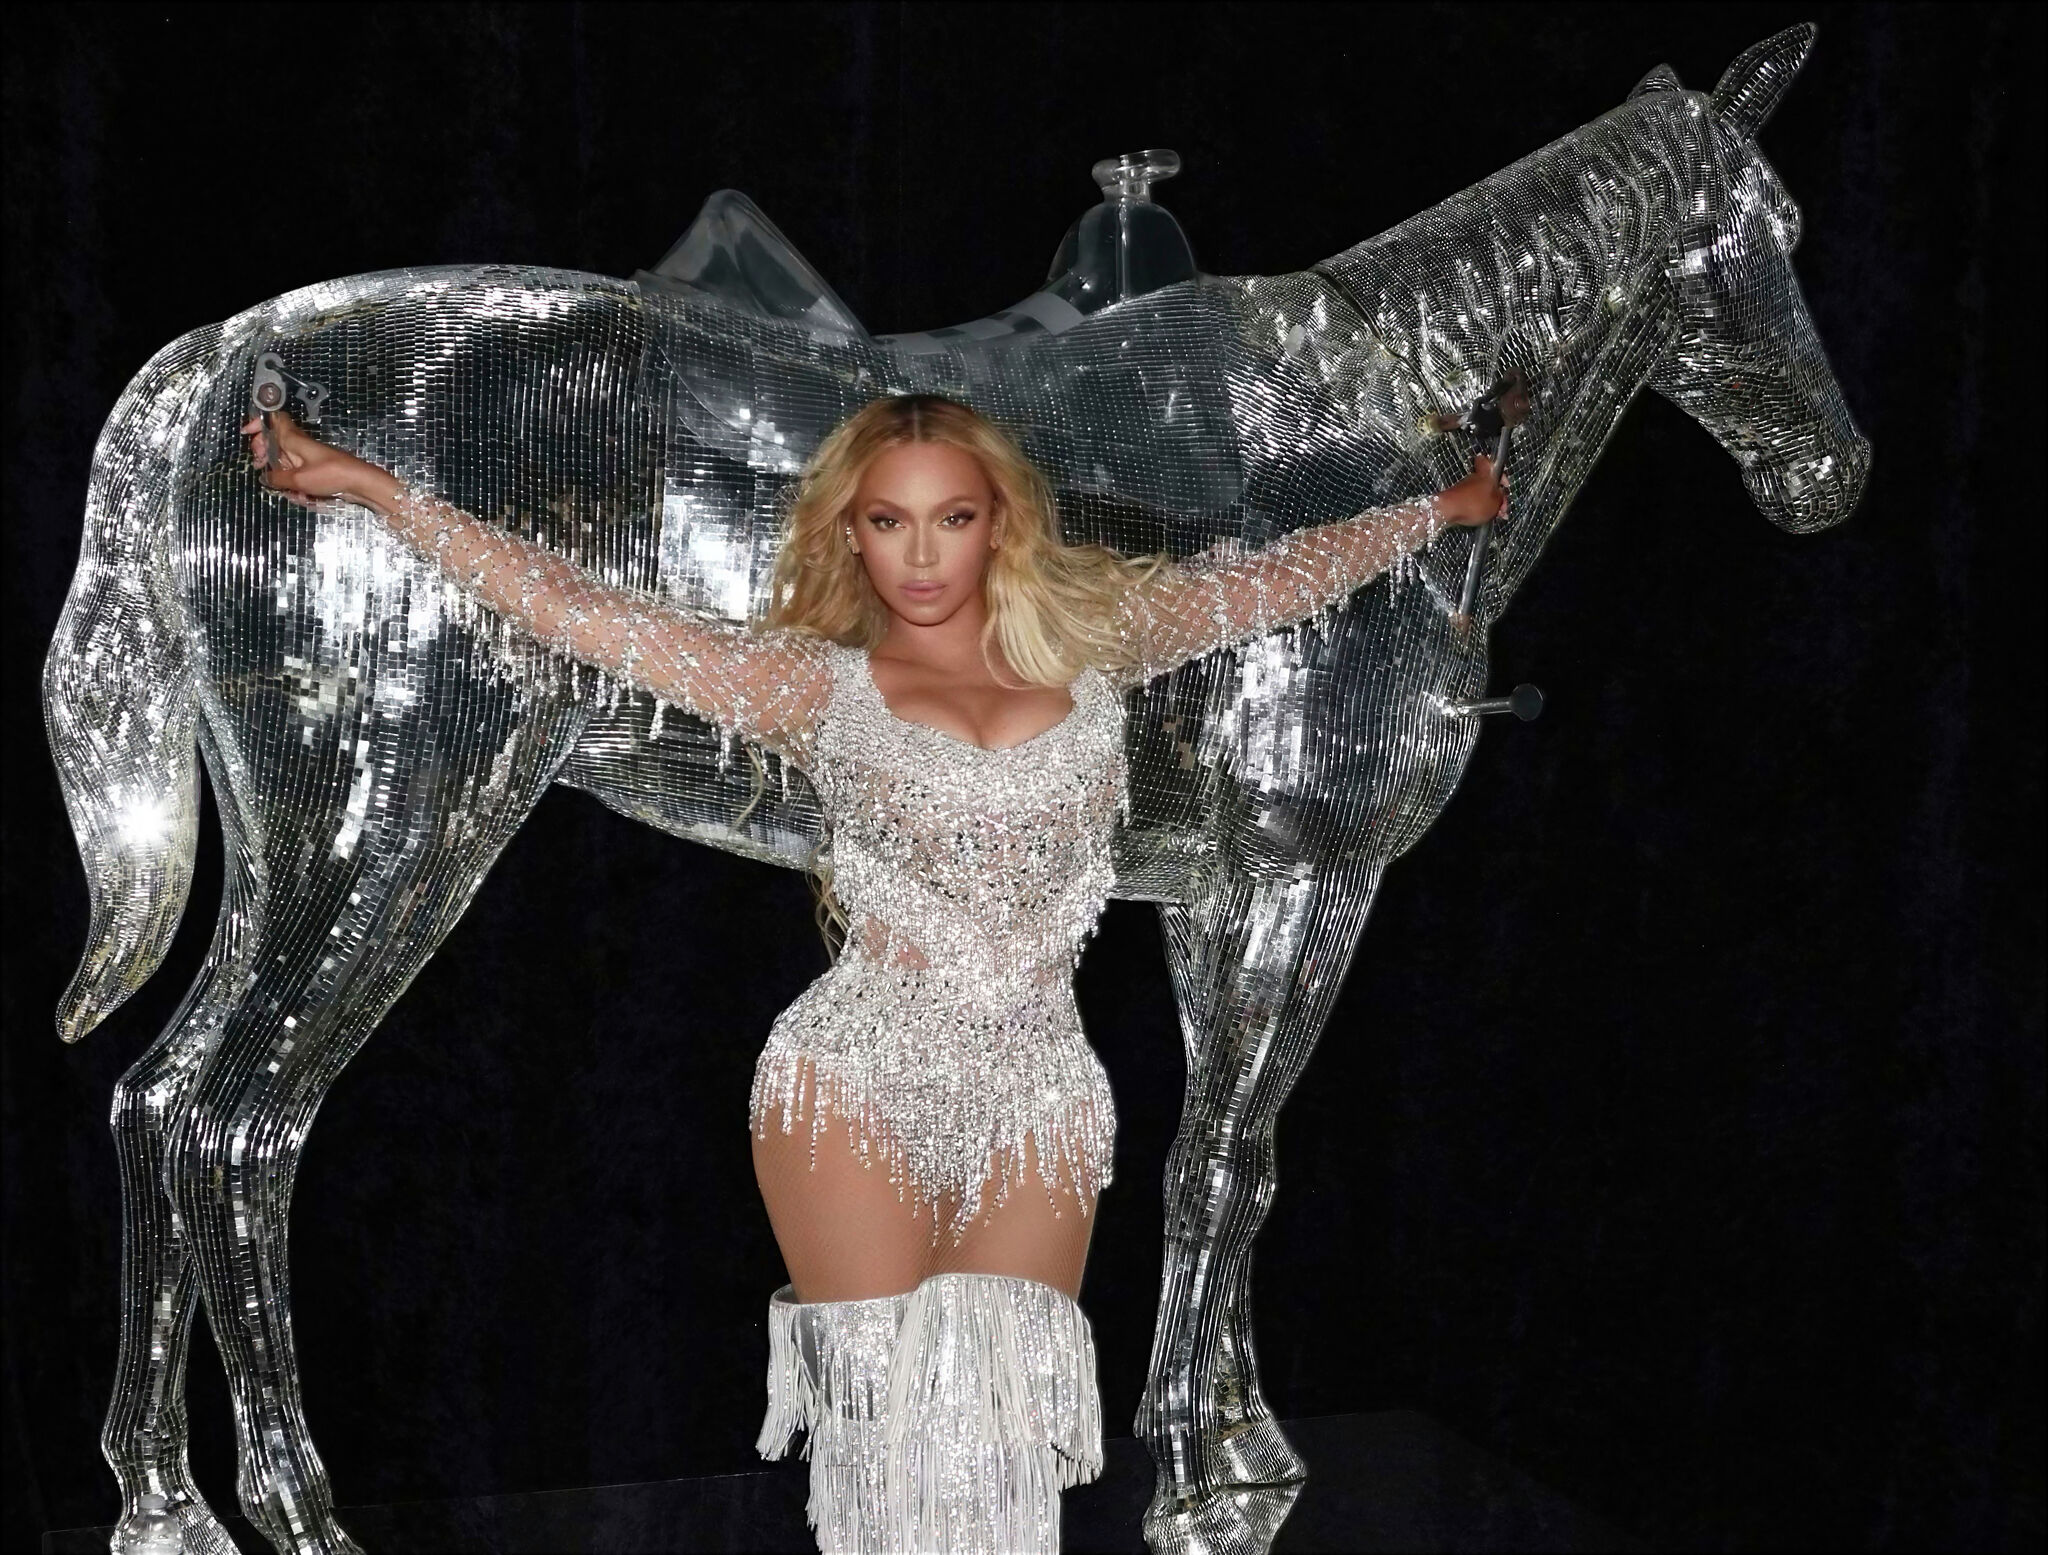 Beyoncé brings dazzling Renaissance Tour to big screens with new concert  film - CultureMap Houston